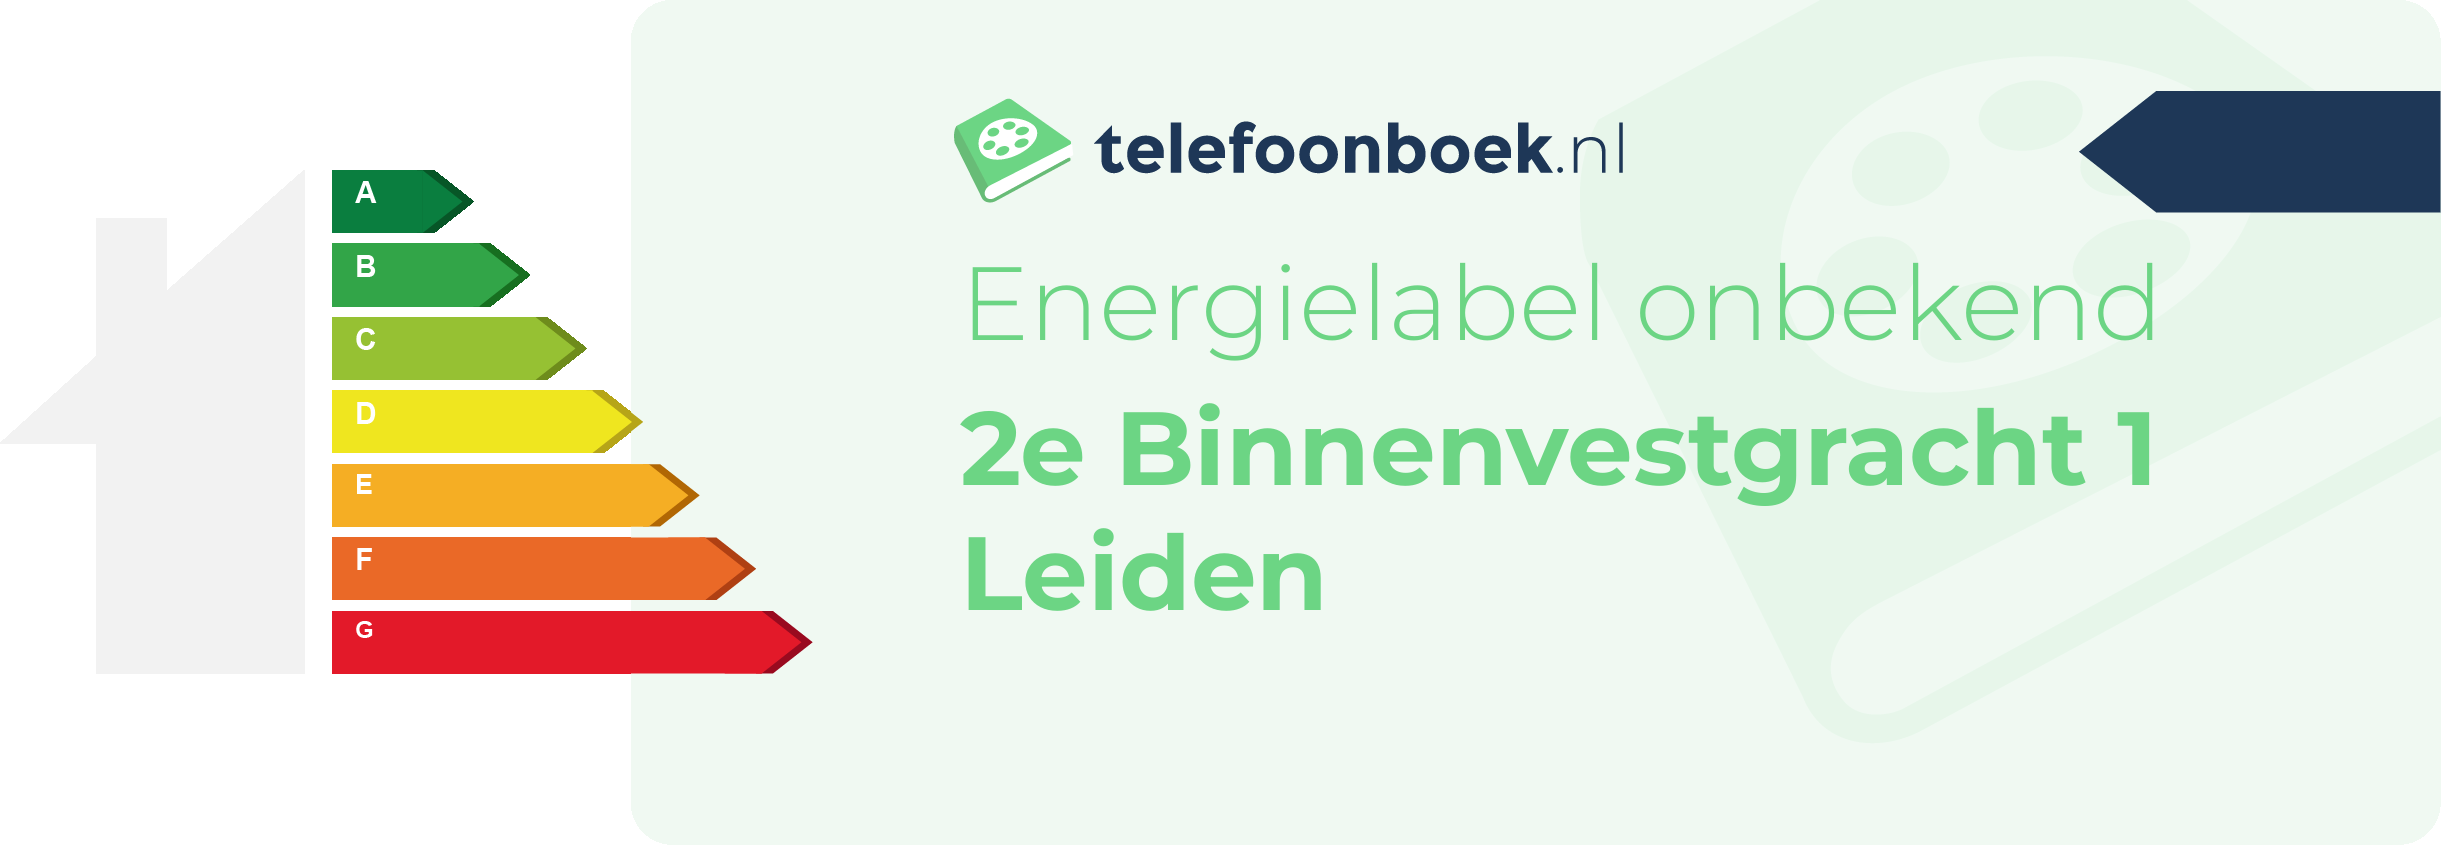 Energielabel 2e Binnenvestgracht 1 Leiden